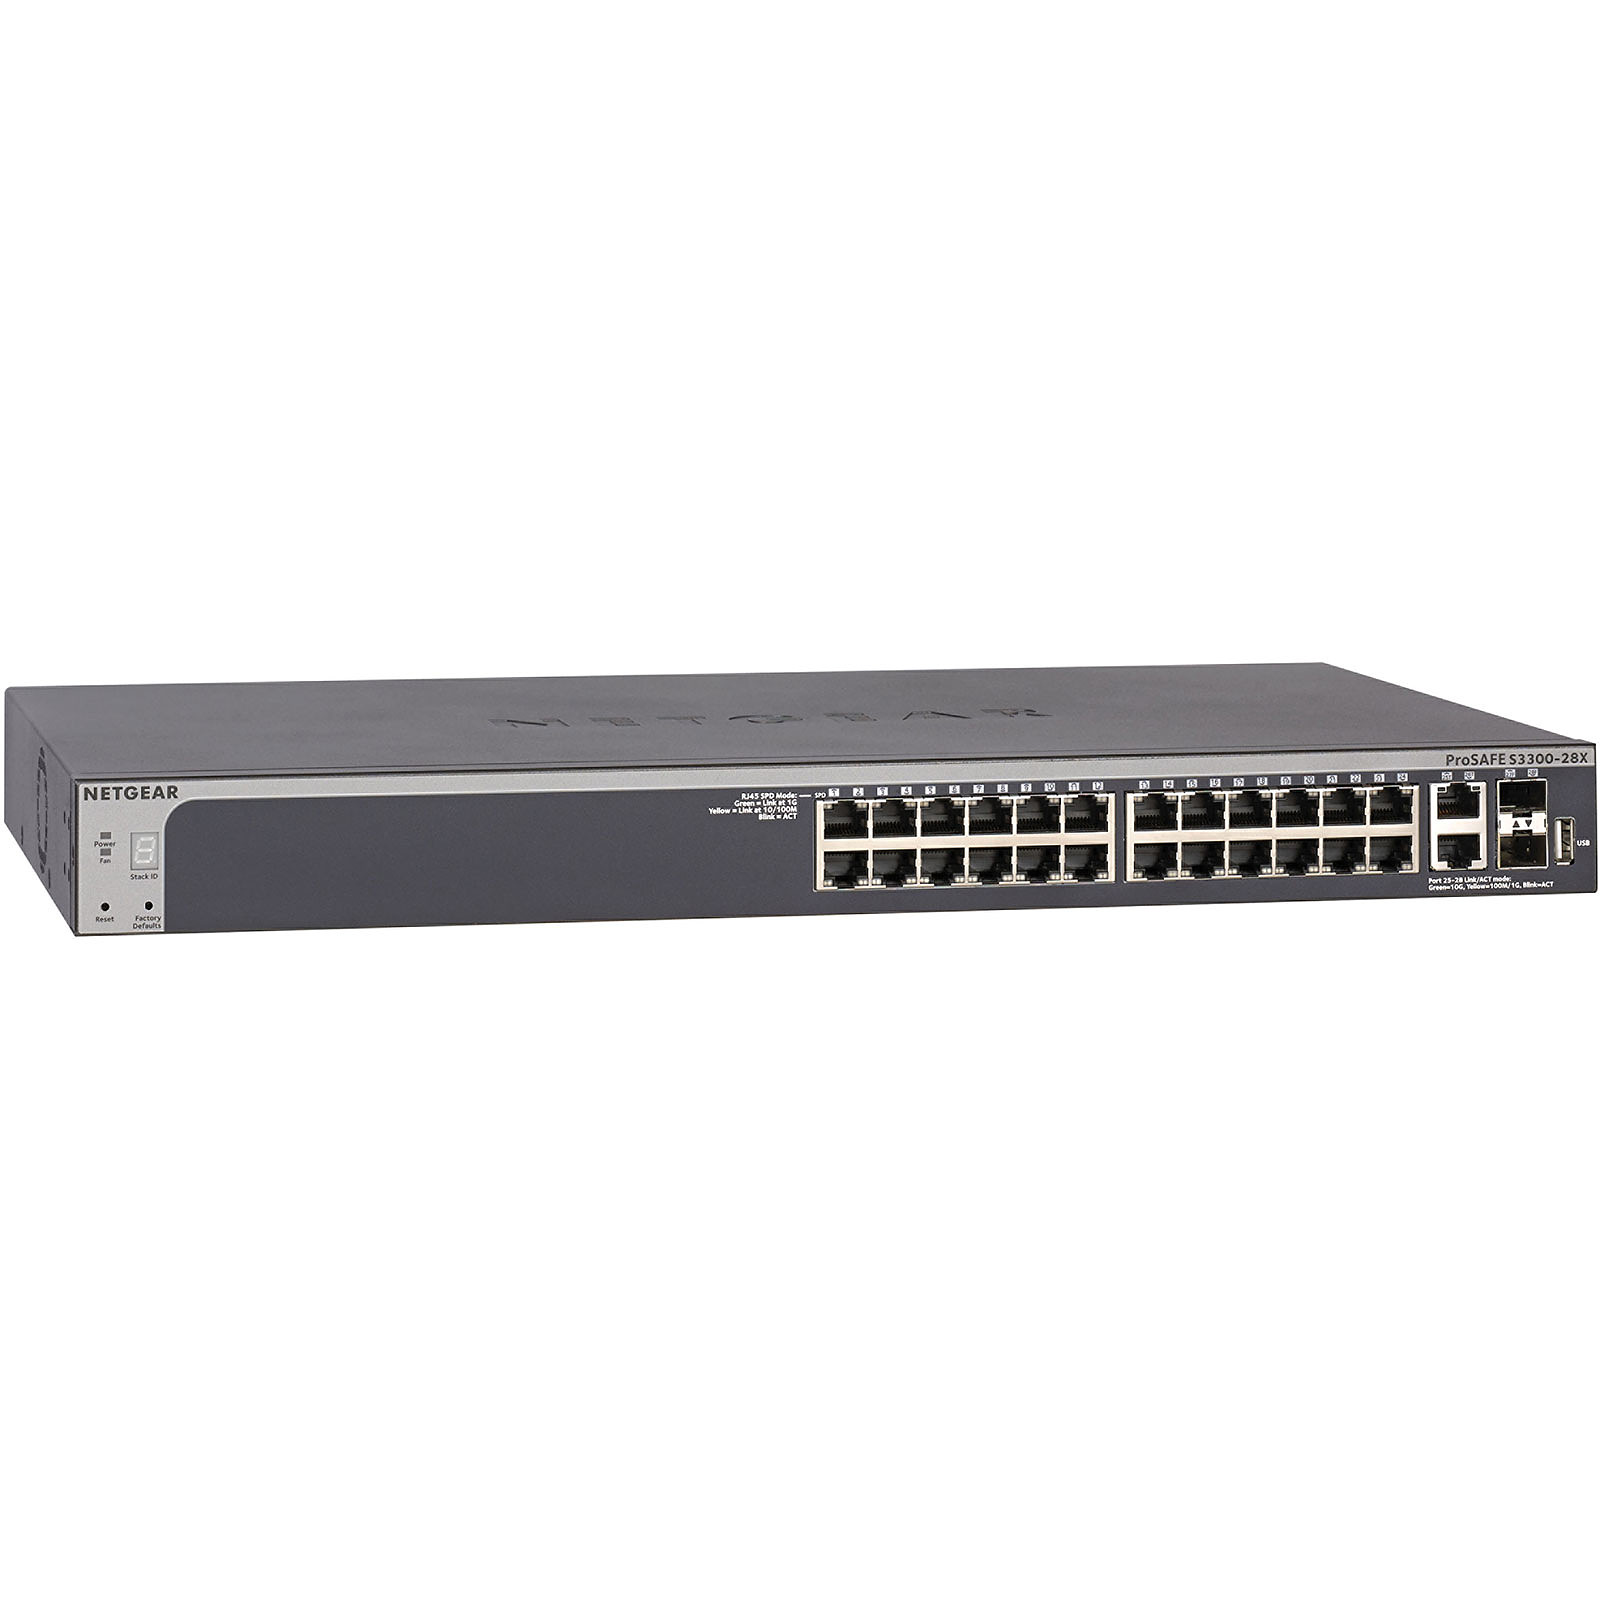 Netgear S3300-28X (GS728TX) - Switch Netgear